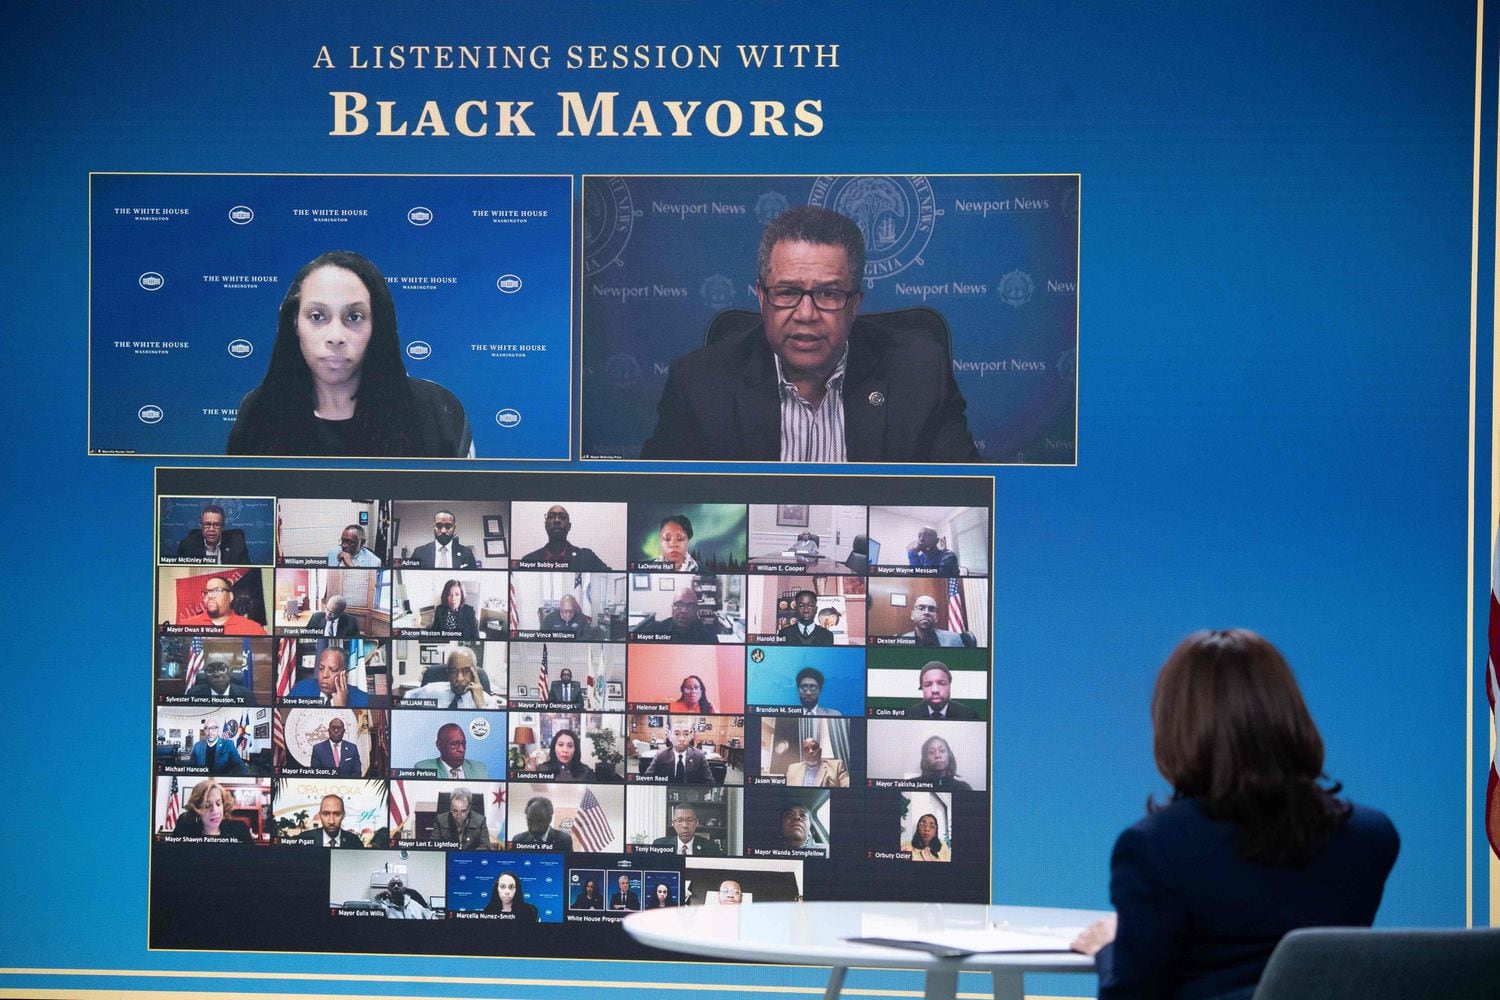 A vice-presidenta Kamala Harris em uma sessão virtual com prefeitos afro-americanos em 10 de fevereiro.